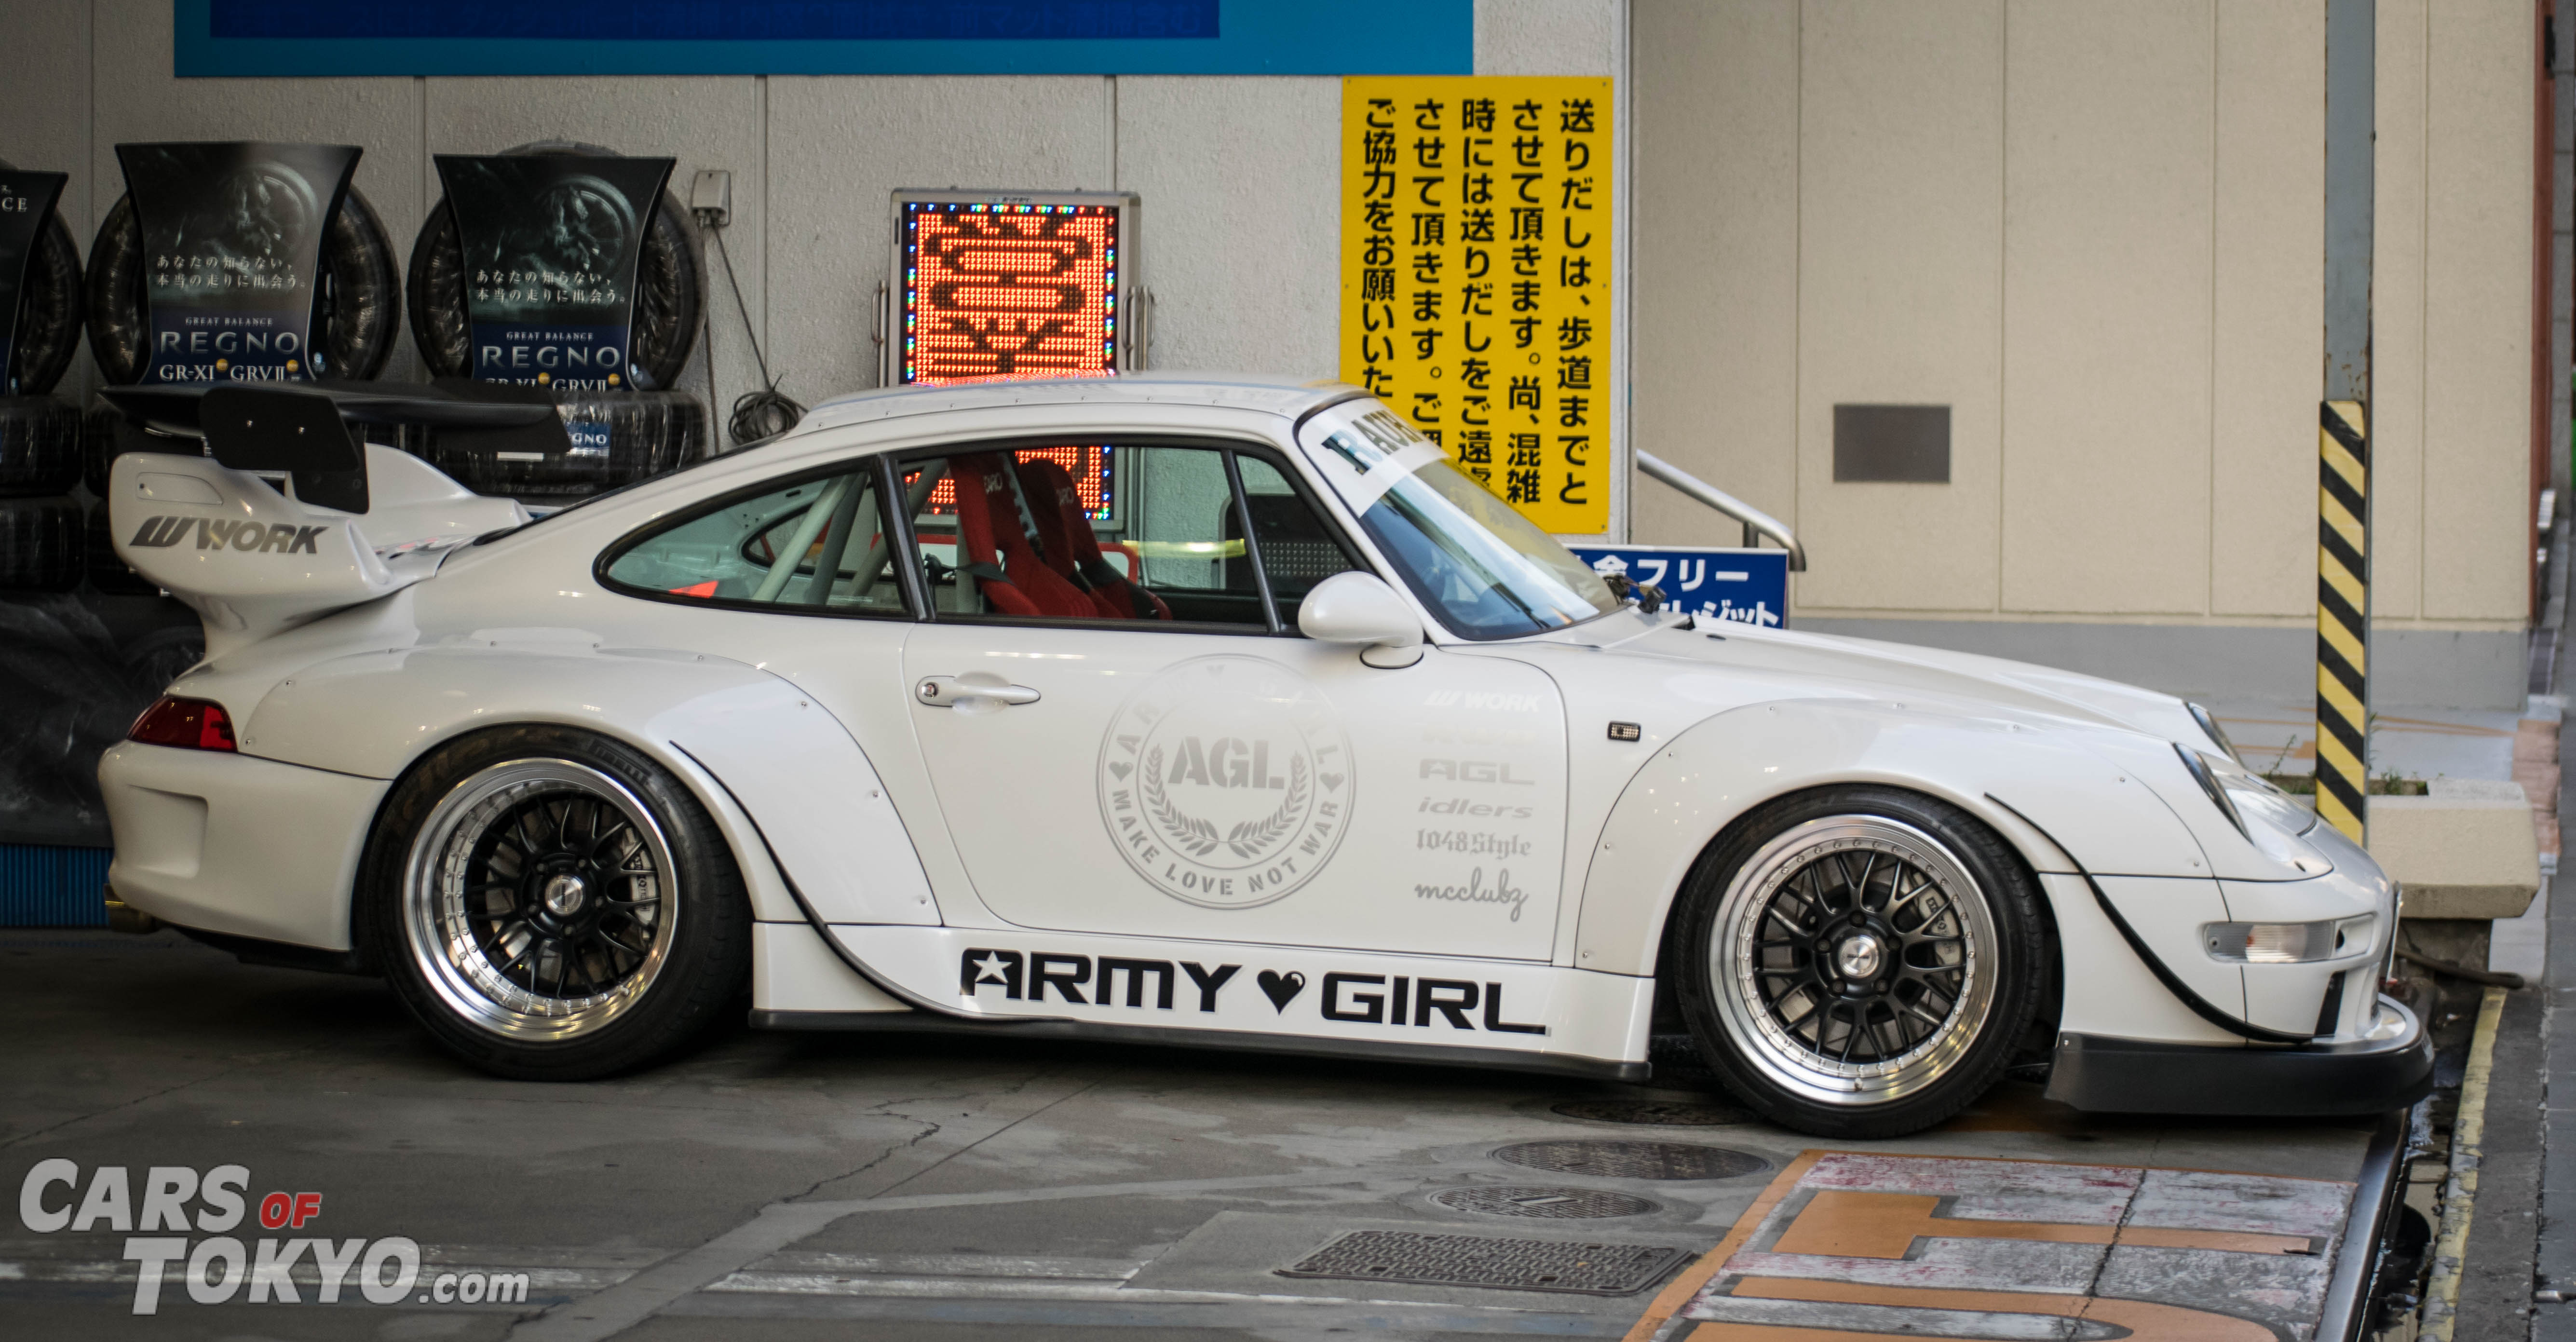 Cars of Tokyo RWB Porsche 911 Army Girl